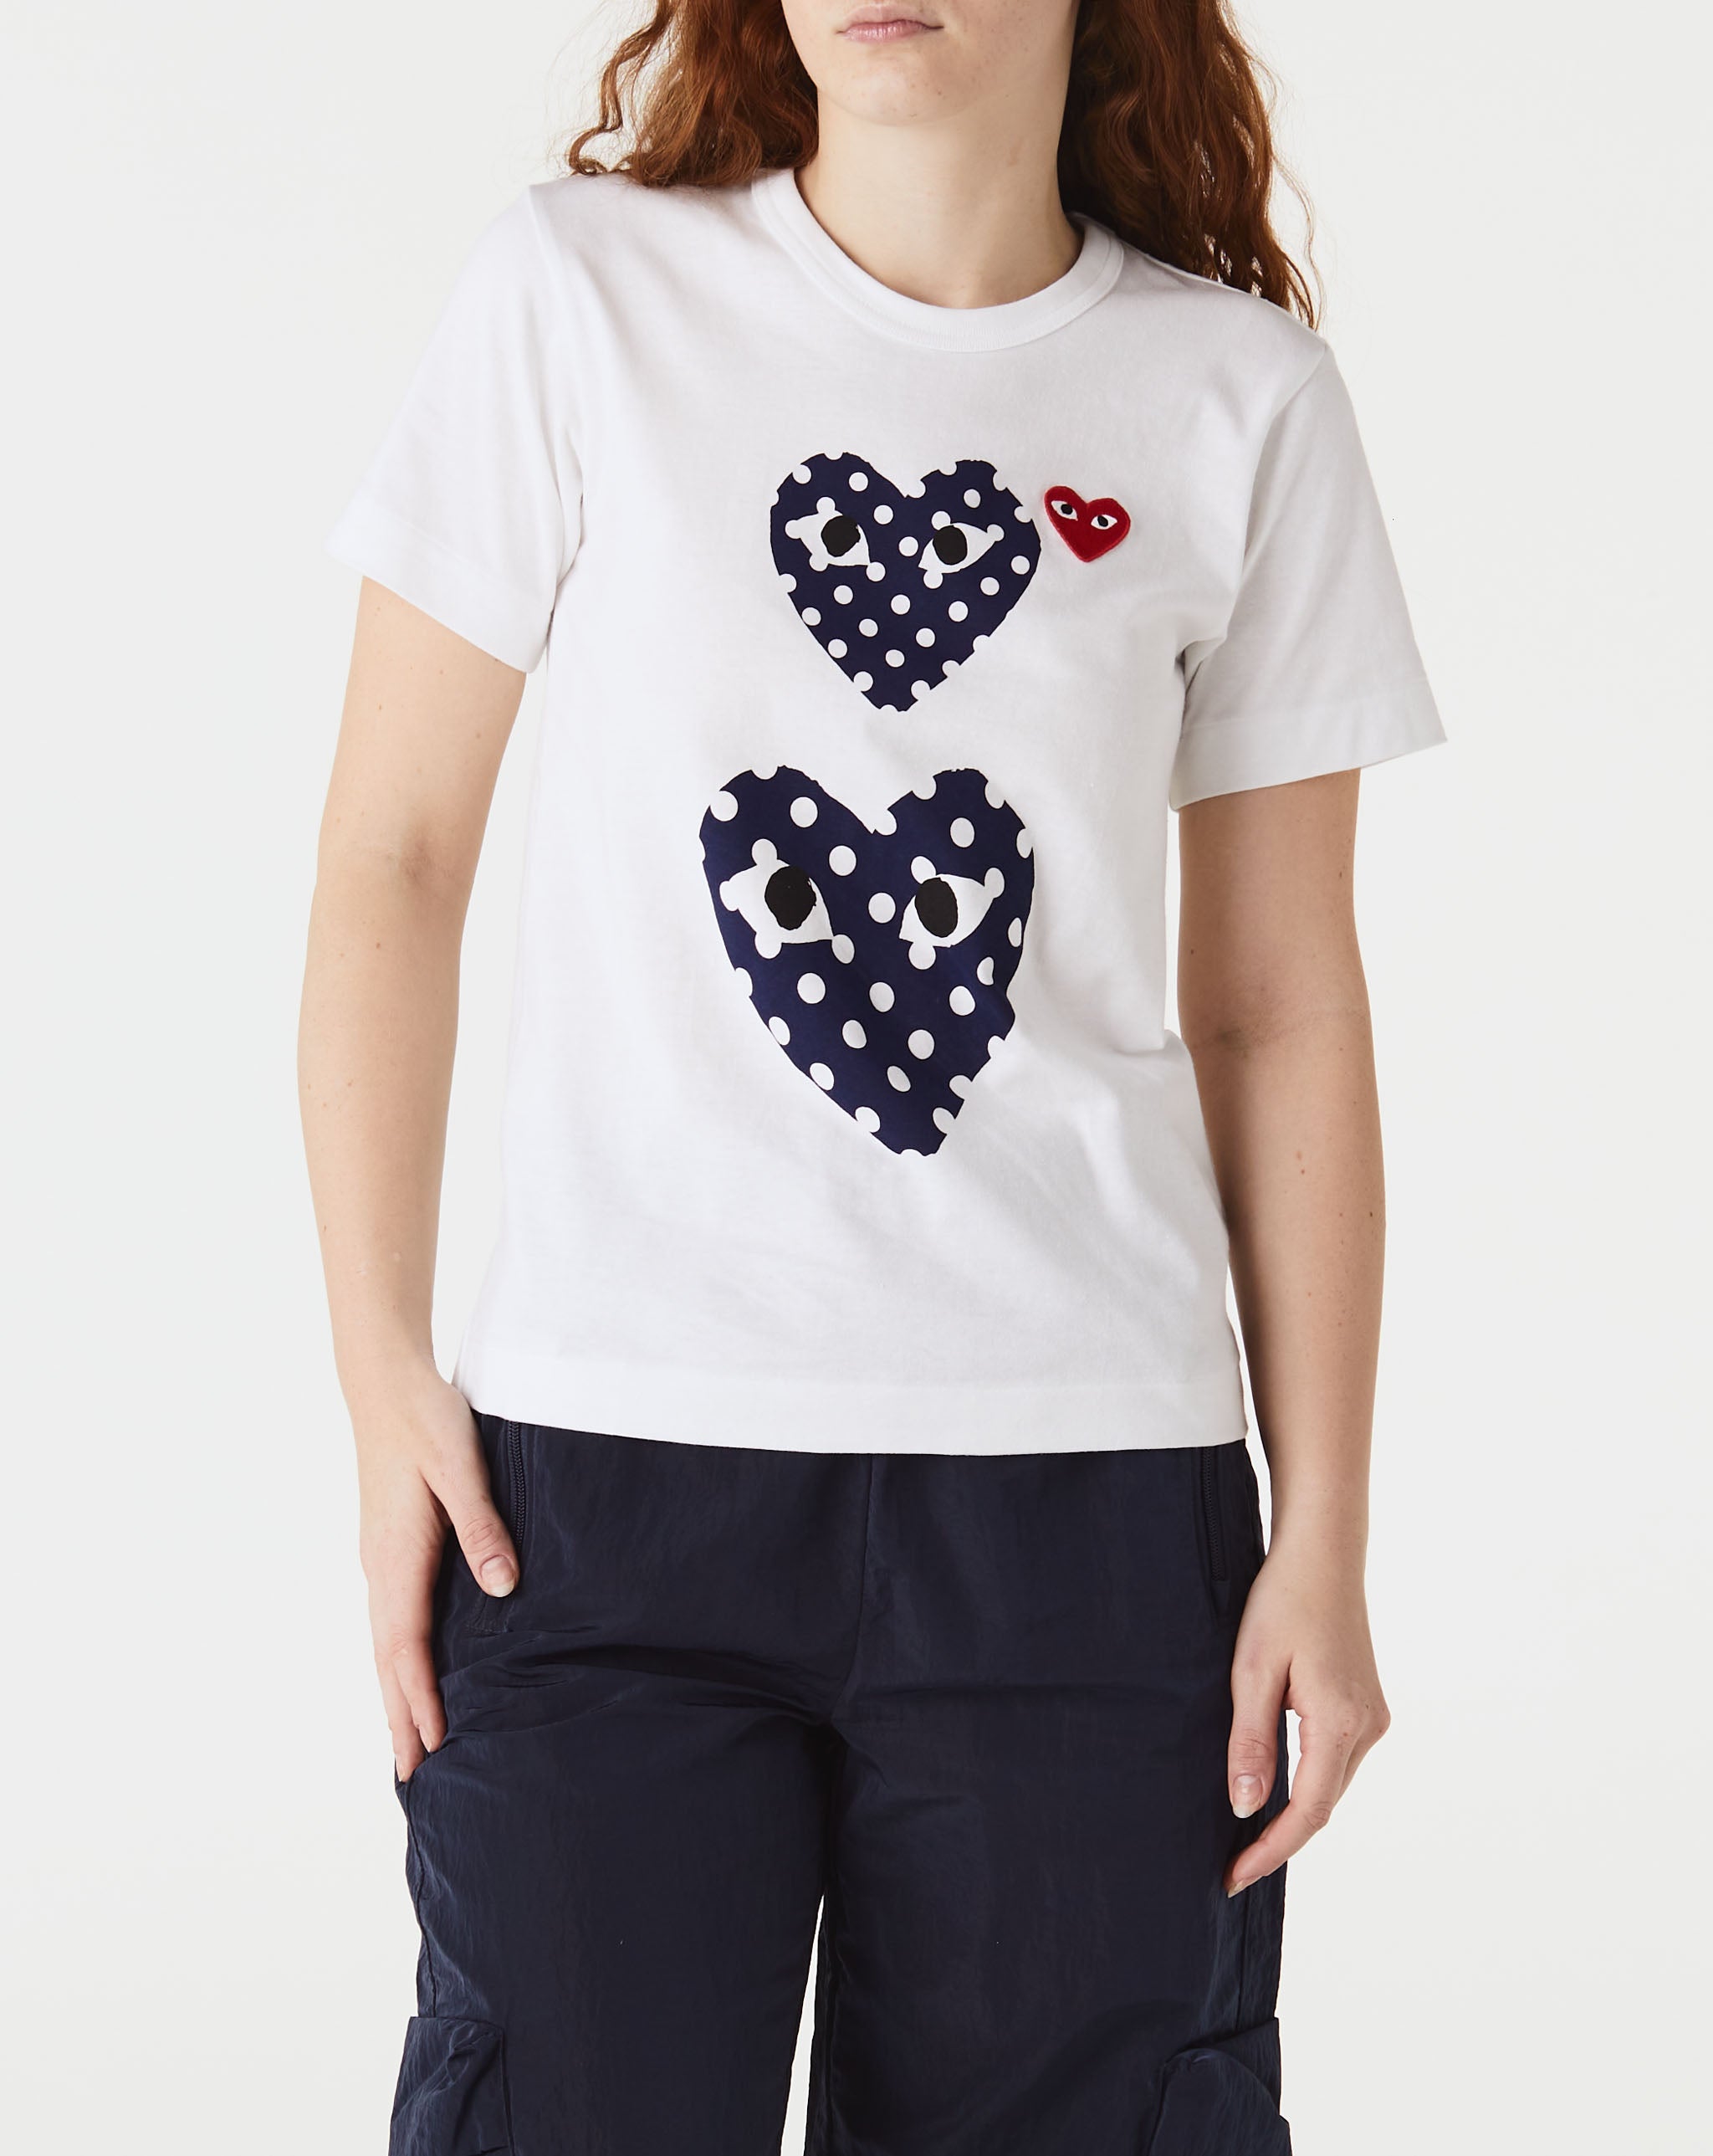 Womens Play Logo T-Shirt Women's Double Polka Dot Heart T-Shirt  - Cheap Urlfreeze Jordan outlet